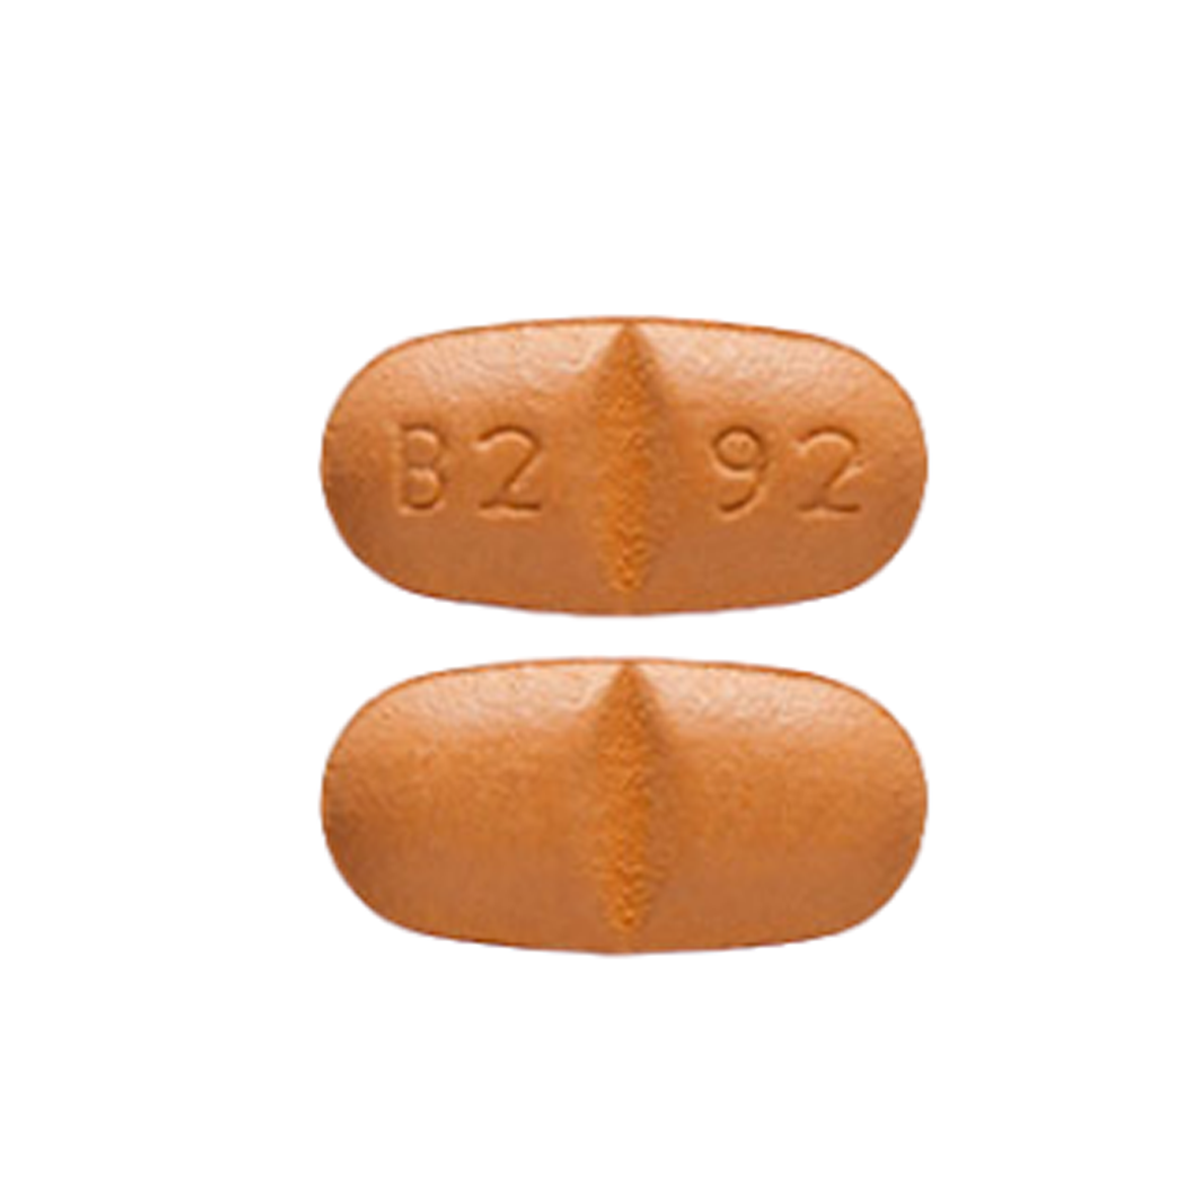 Oxcarbazepine (TRILEPTAL)